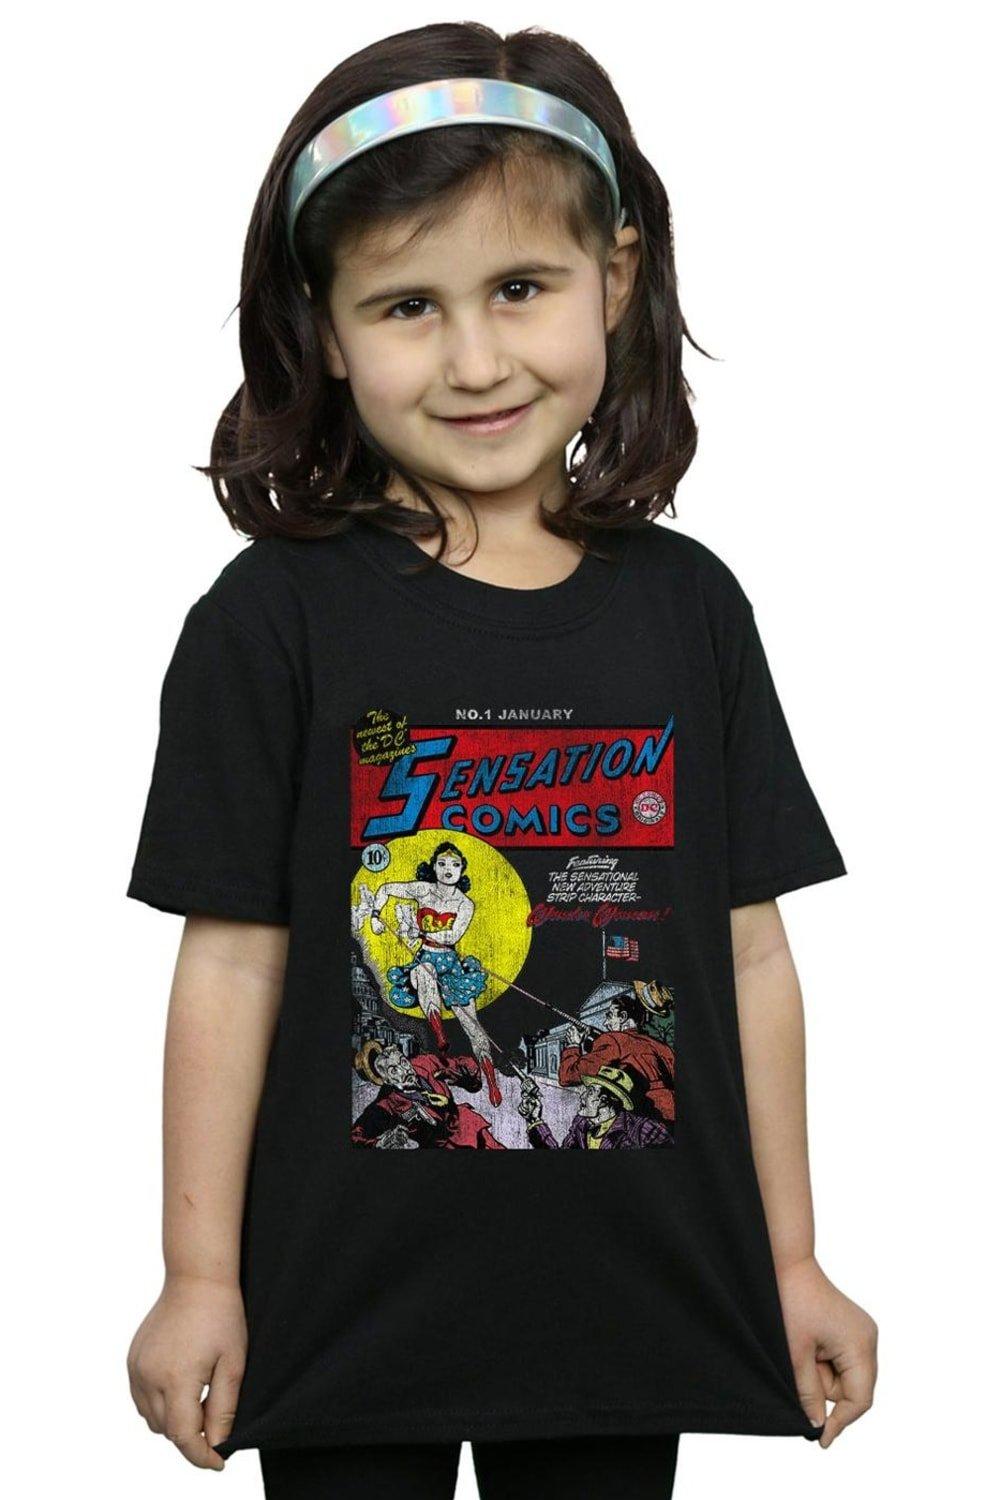 Wonder Woman Sensation Comics Issue 1 Cover Cotton T-Shirt